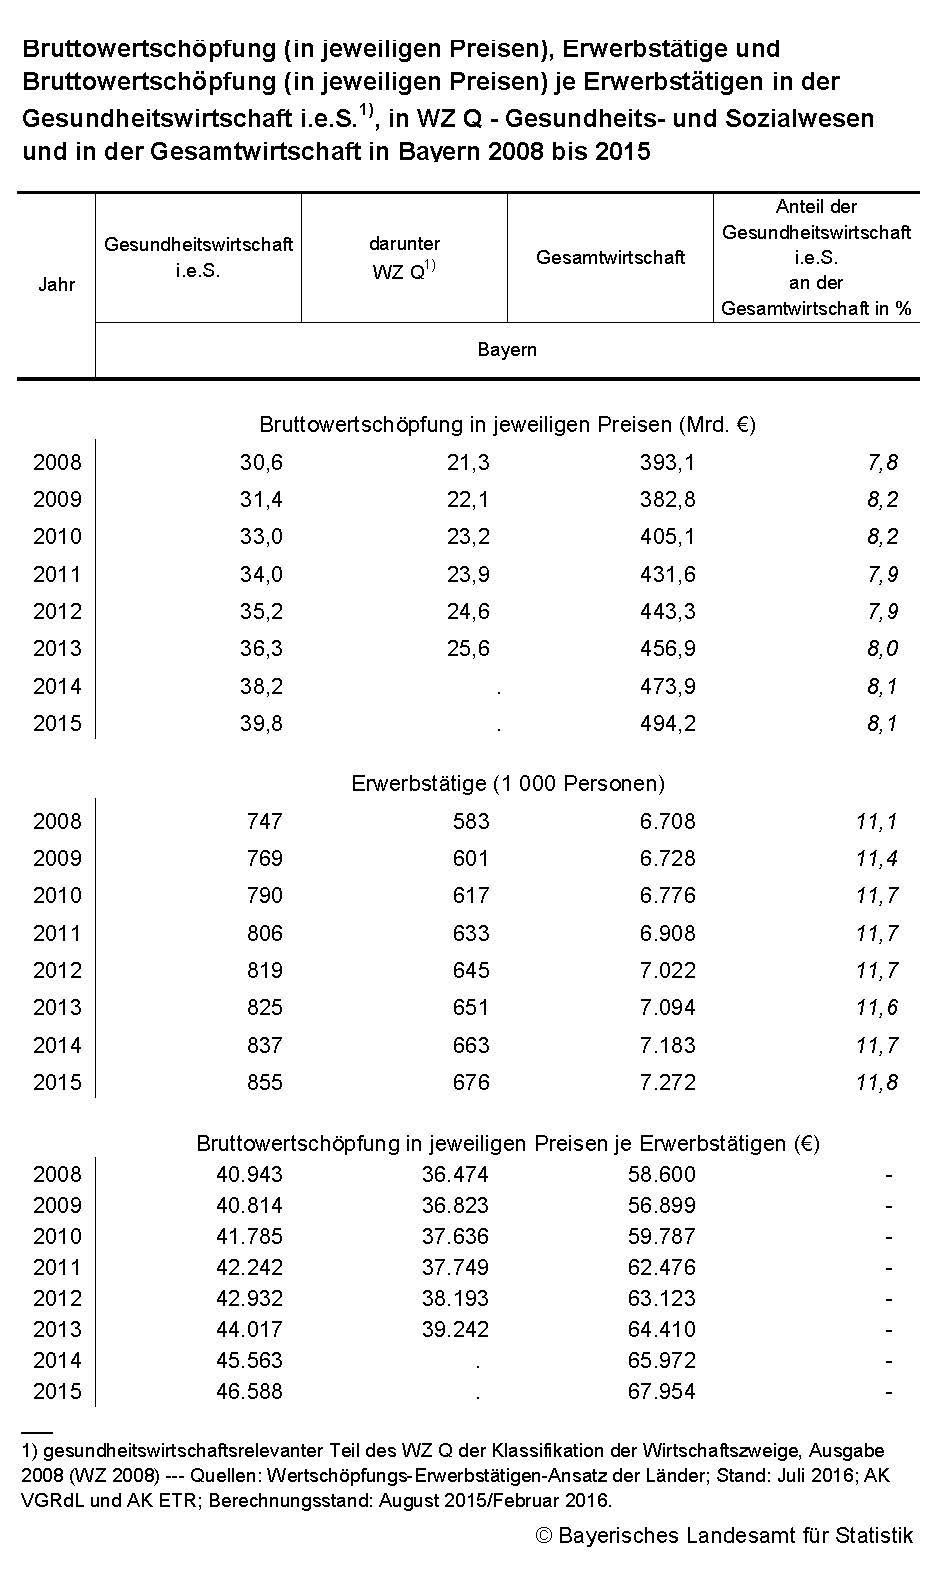 Bruttowertschöpfung (in jeweiligen Preisen), Erwerbstätige und  Bruttowertschöpfung (in jeweiligen Preisen) je Erwerbstätigen in der Gesundheitswirtschaft i.e.S.1), in WZ Q - Gesundheits- und Sozialwesen und in der Gesamtwirtschaft in Bayern 2008 bis 2015